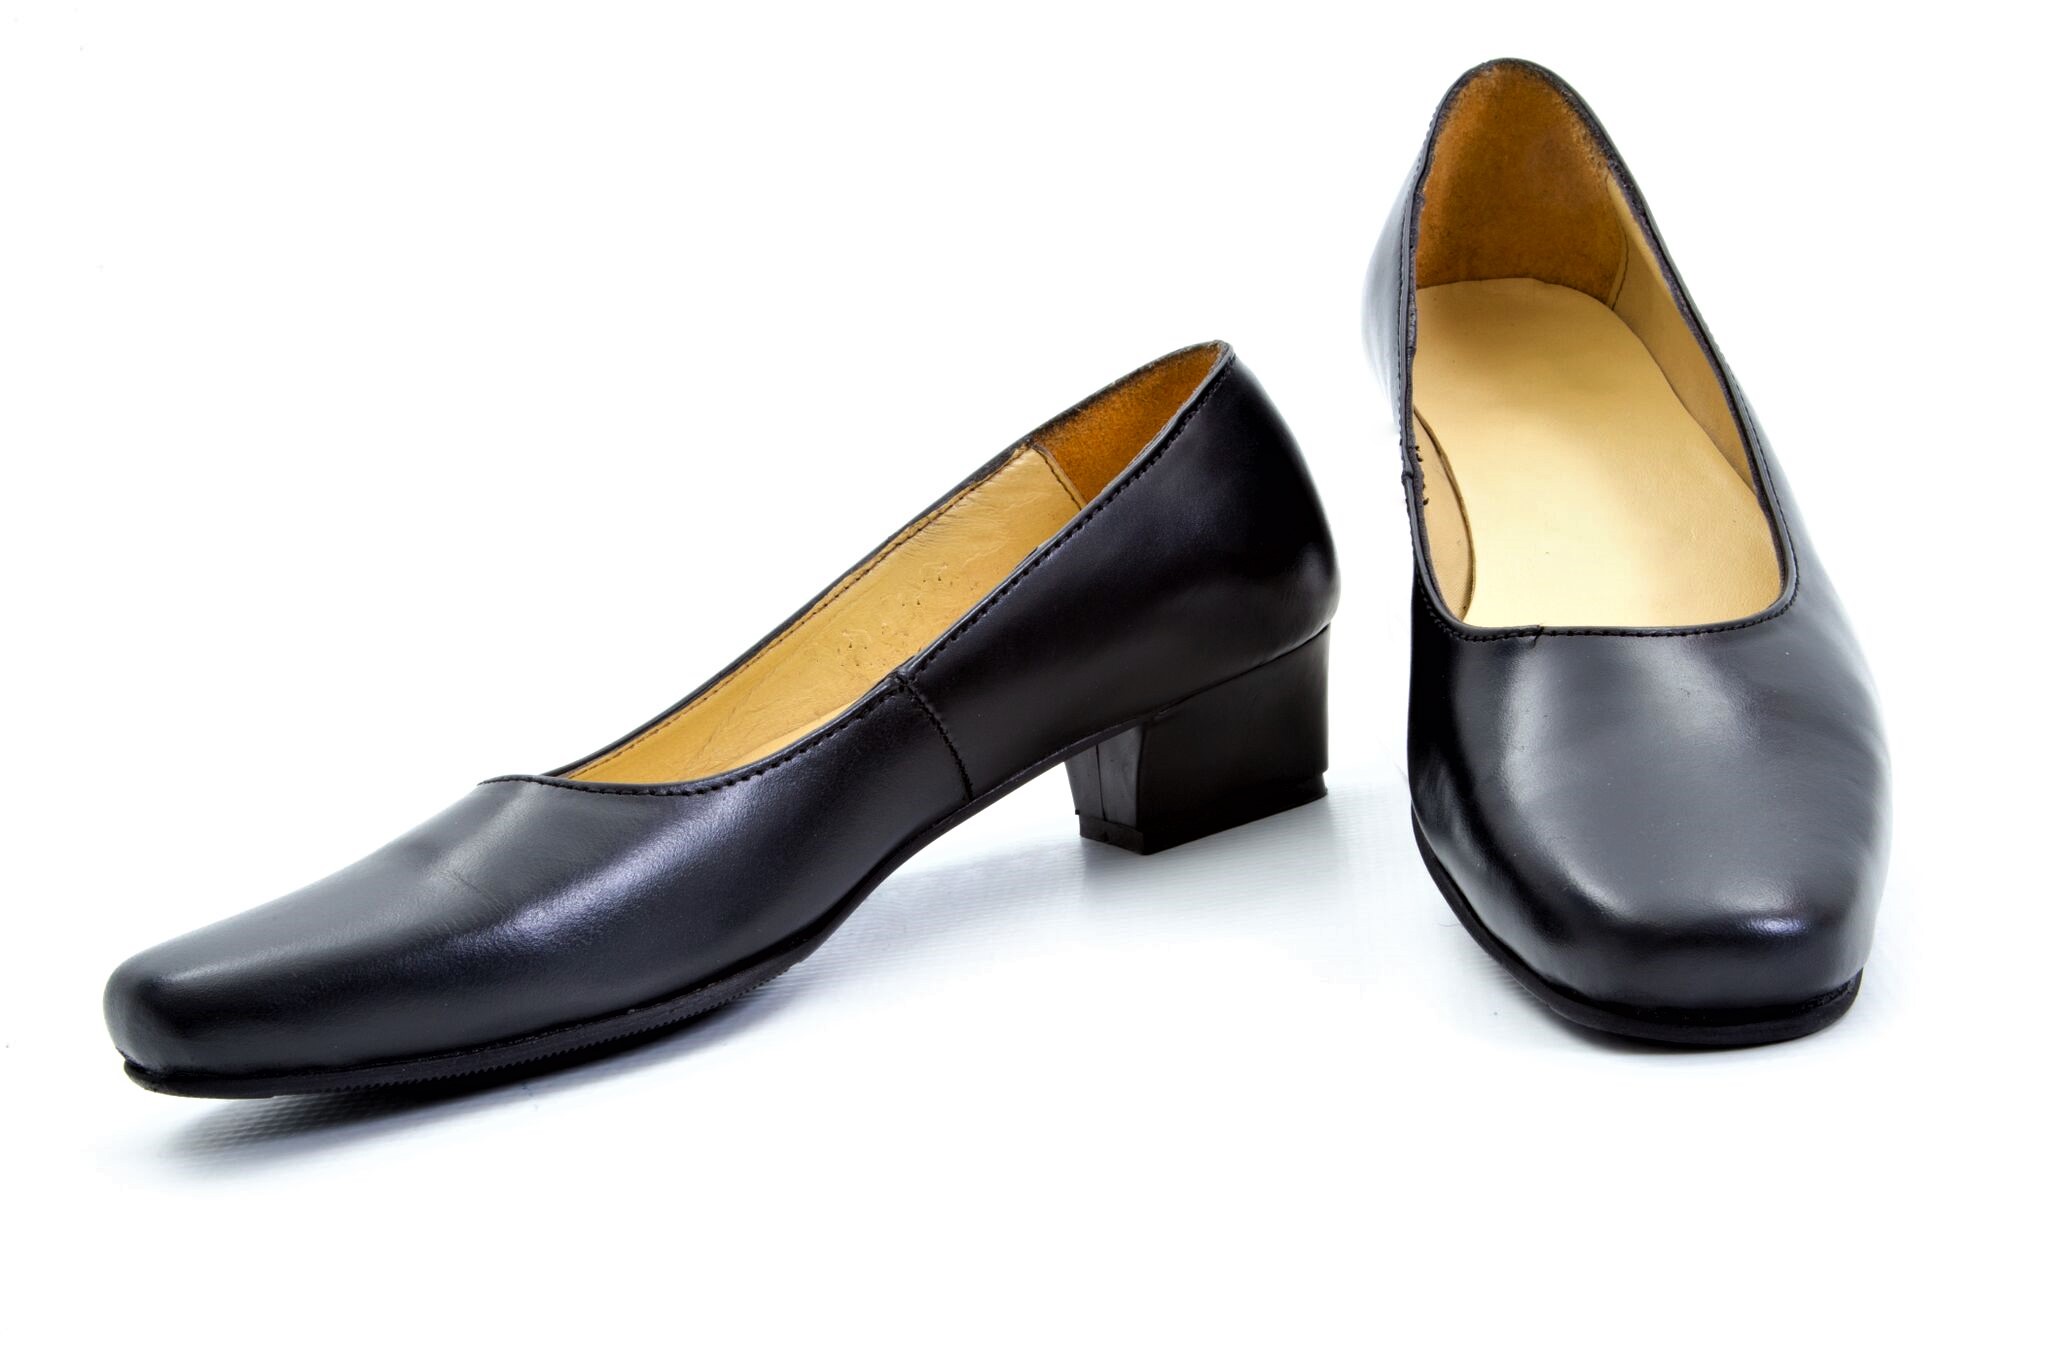 Plain Black Leather, Female Court Shoes 